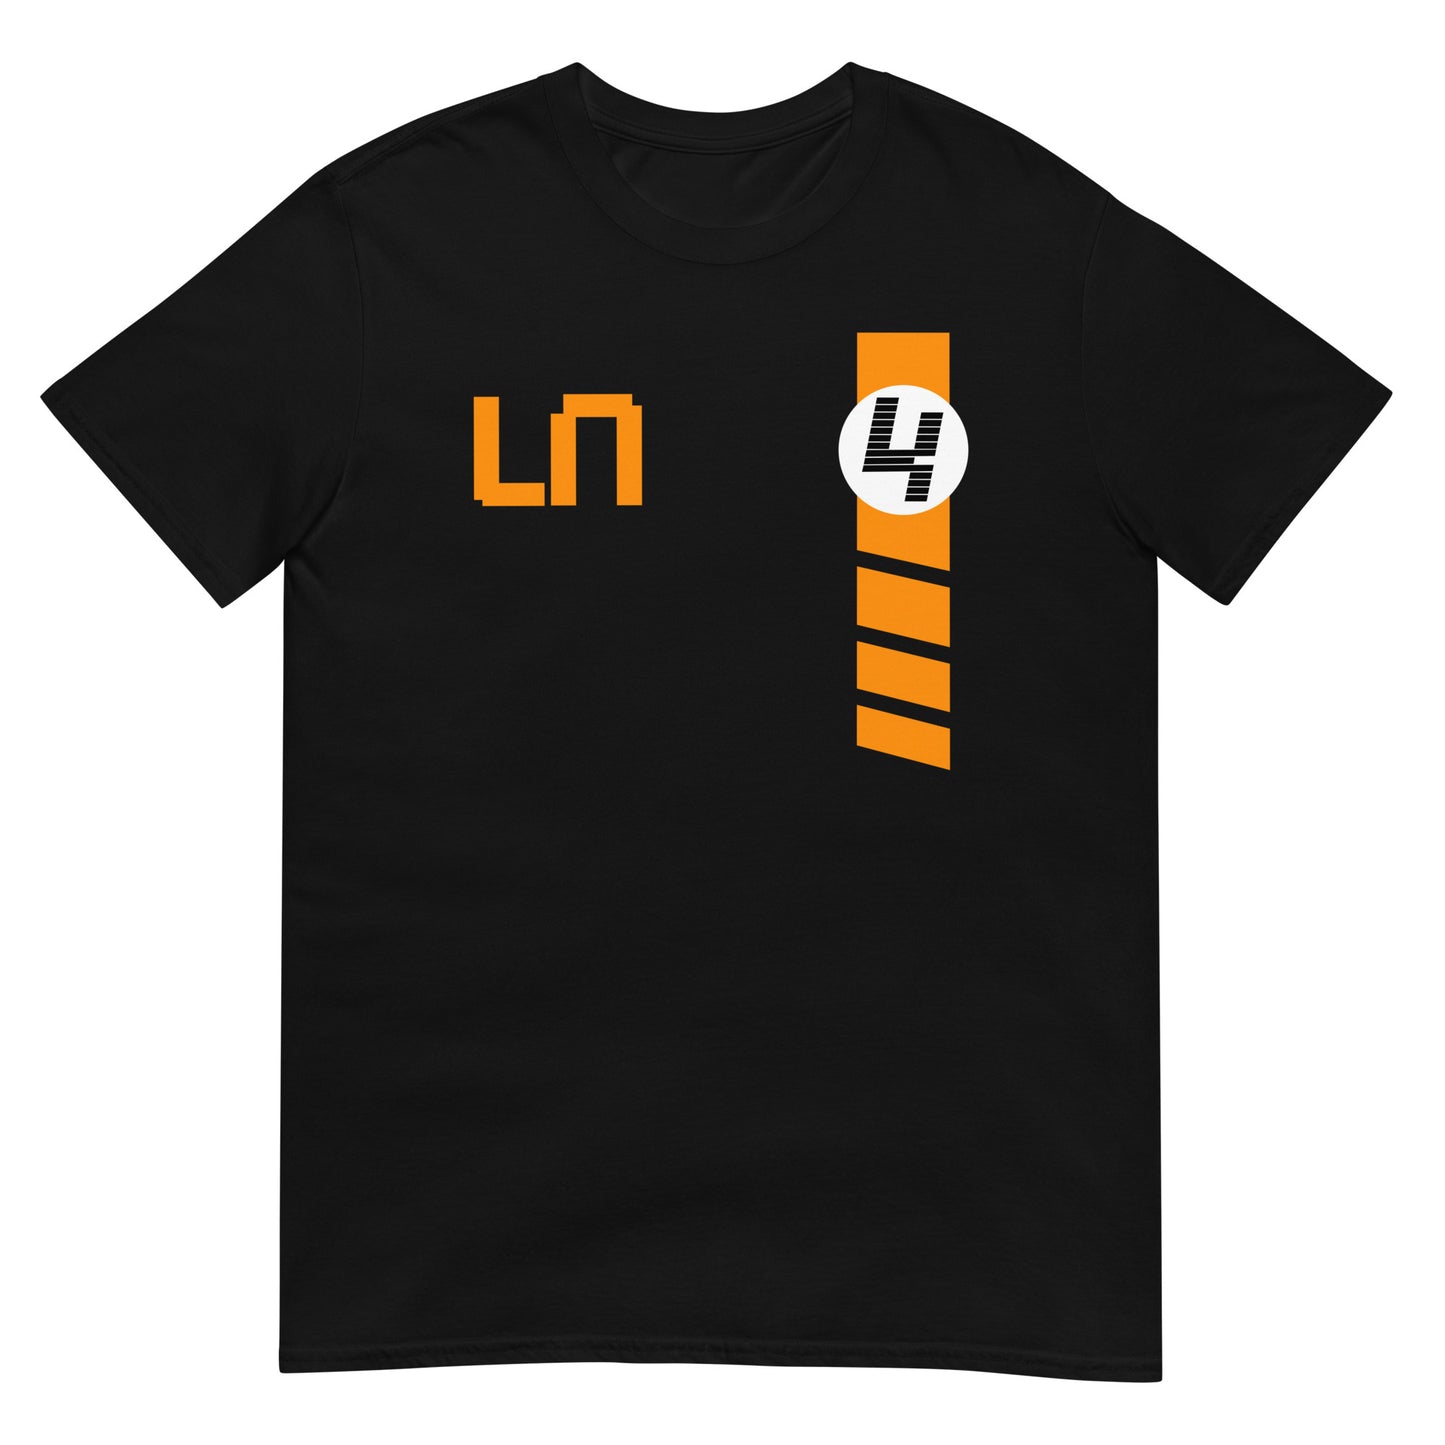 Lando Norris McLaren Unisex T-Shirt black